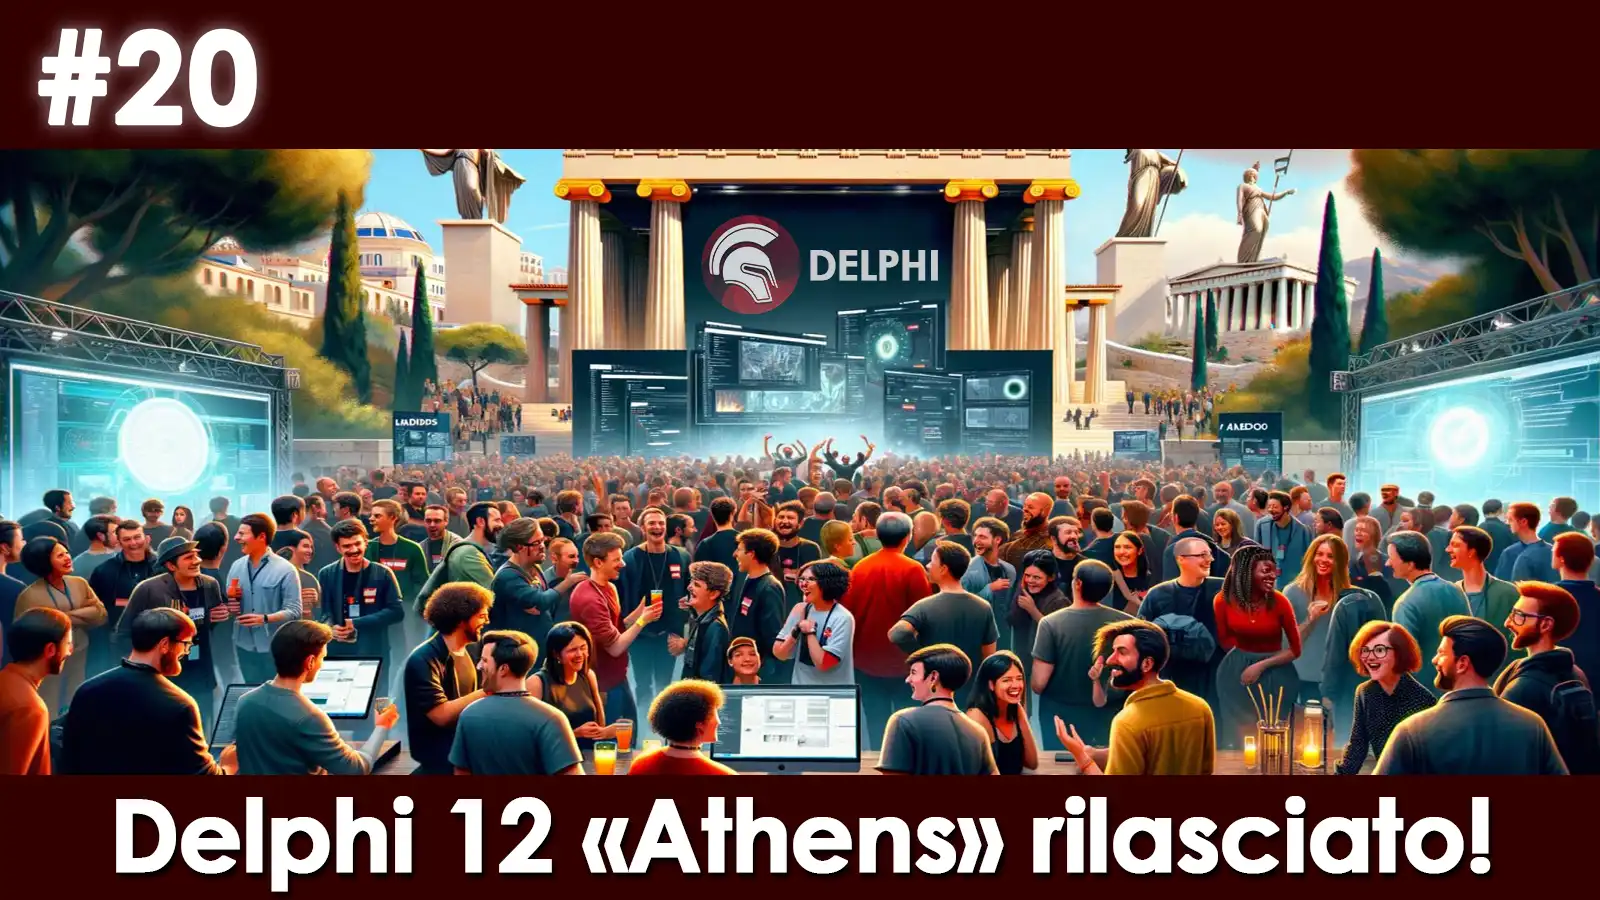 Delphi 12 Athens: nuova versione rilasciata